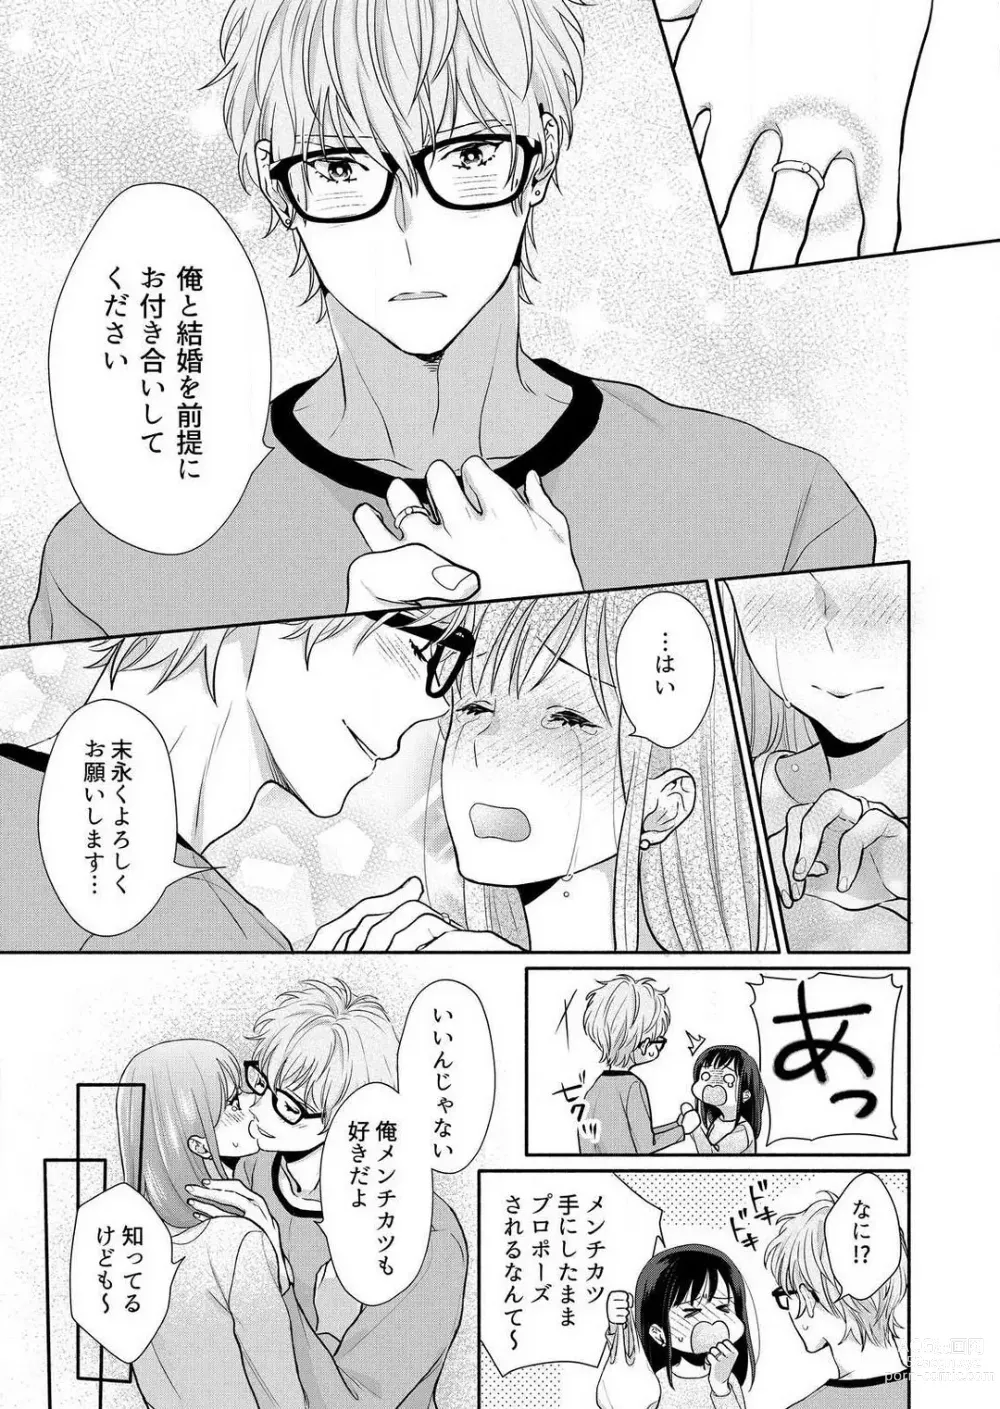 Page 195 of manga Suki Kawaii Guchagucha ni Shitai - Osananajimi wa Kojirase Sugiteru 1-8